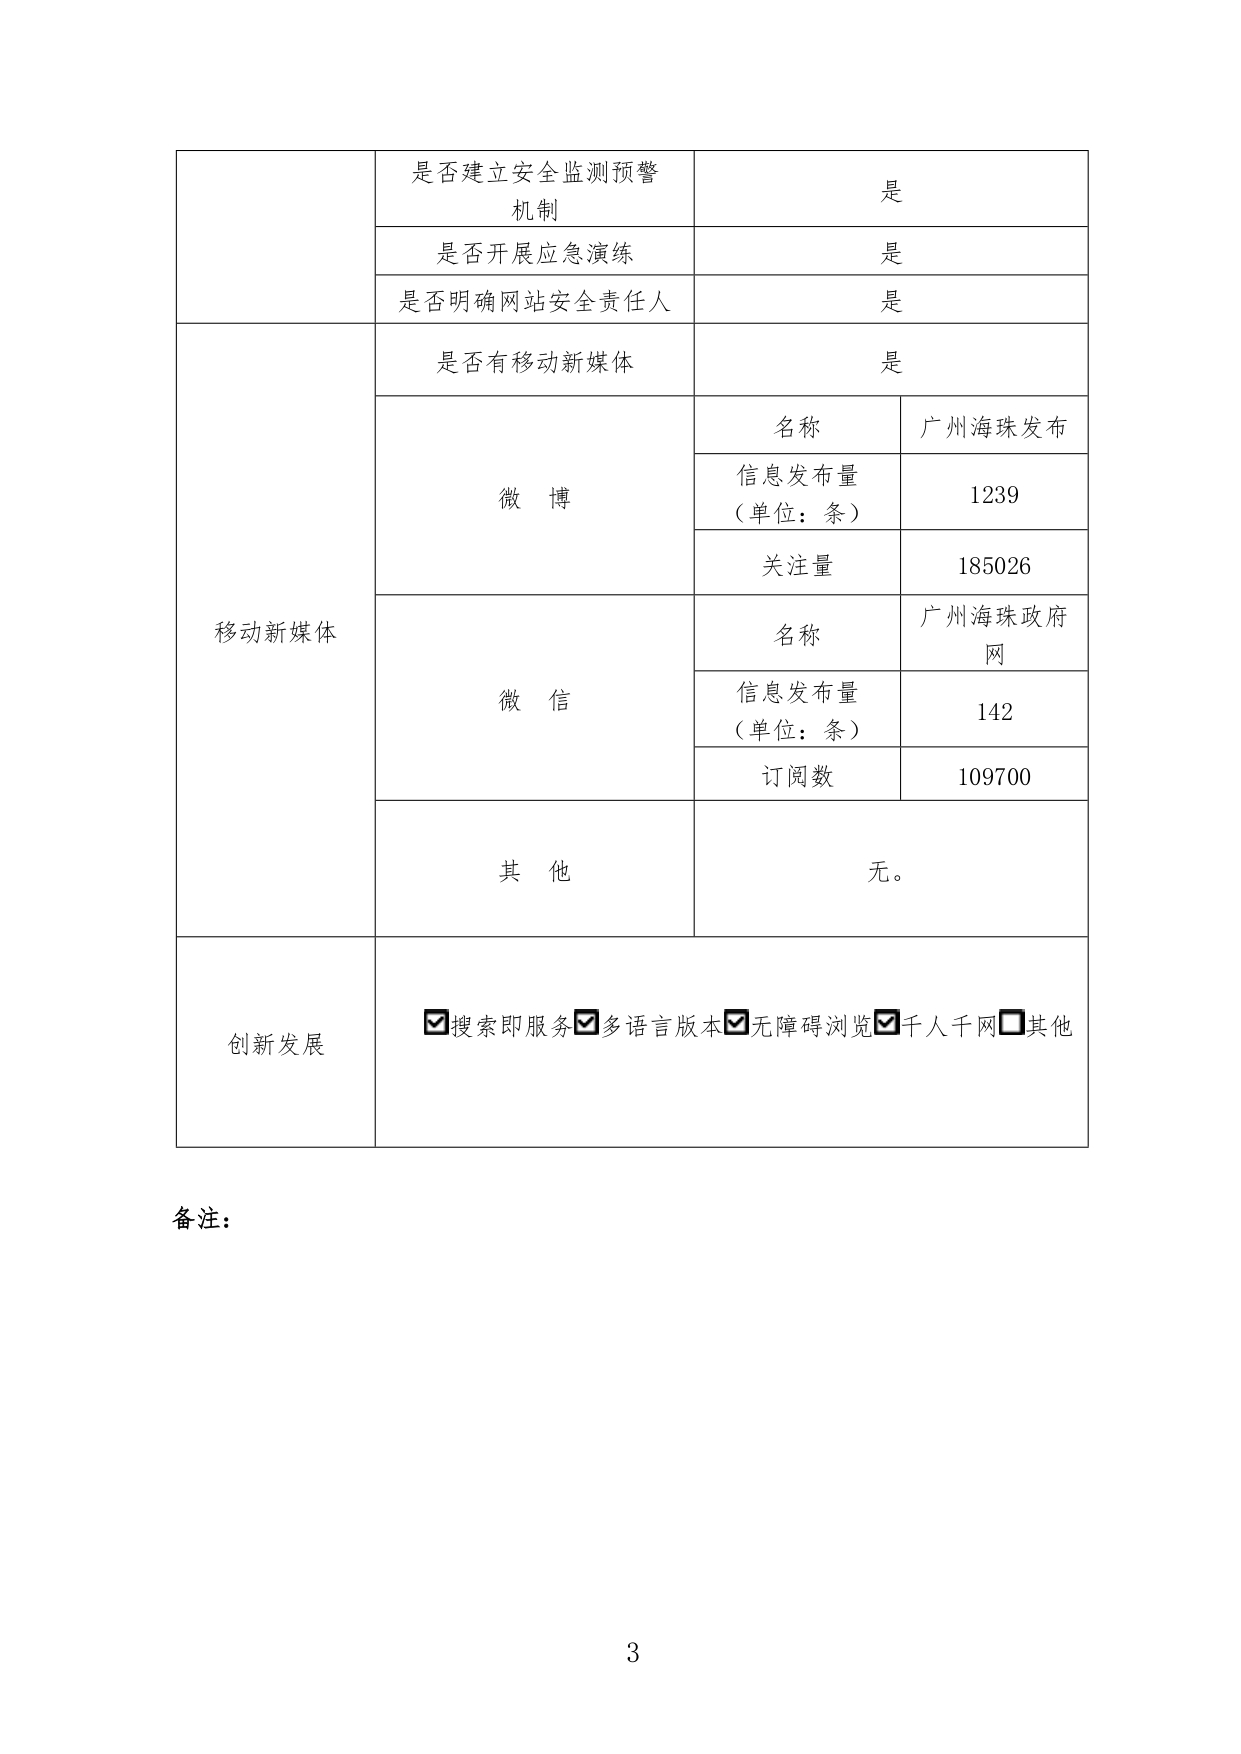 广州市海珠区人民政府网站工作2022年度报表_page-0003.jpg